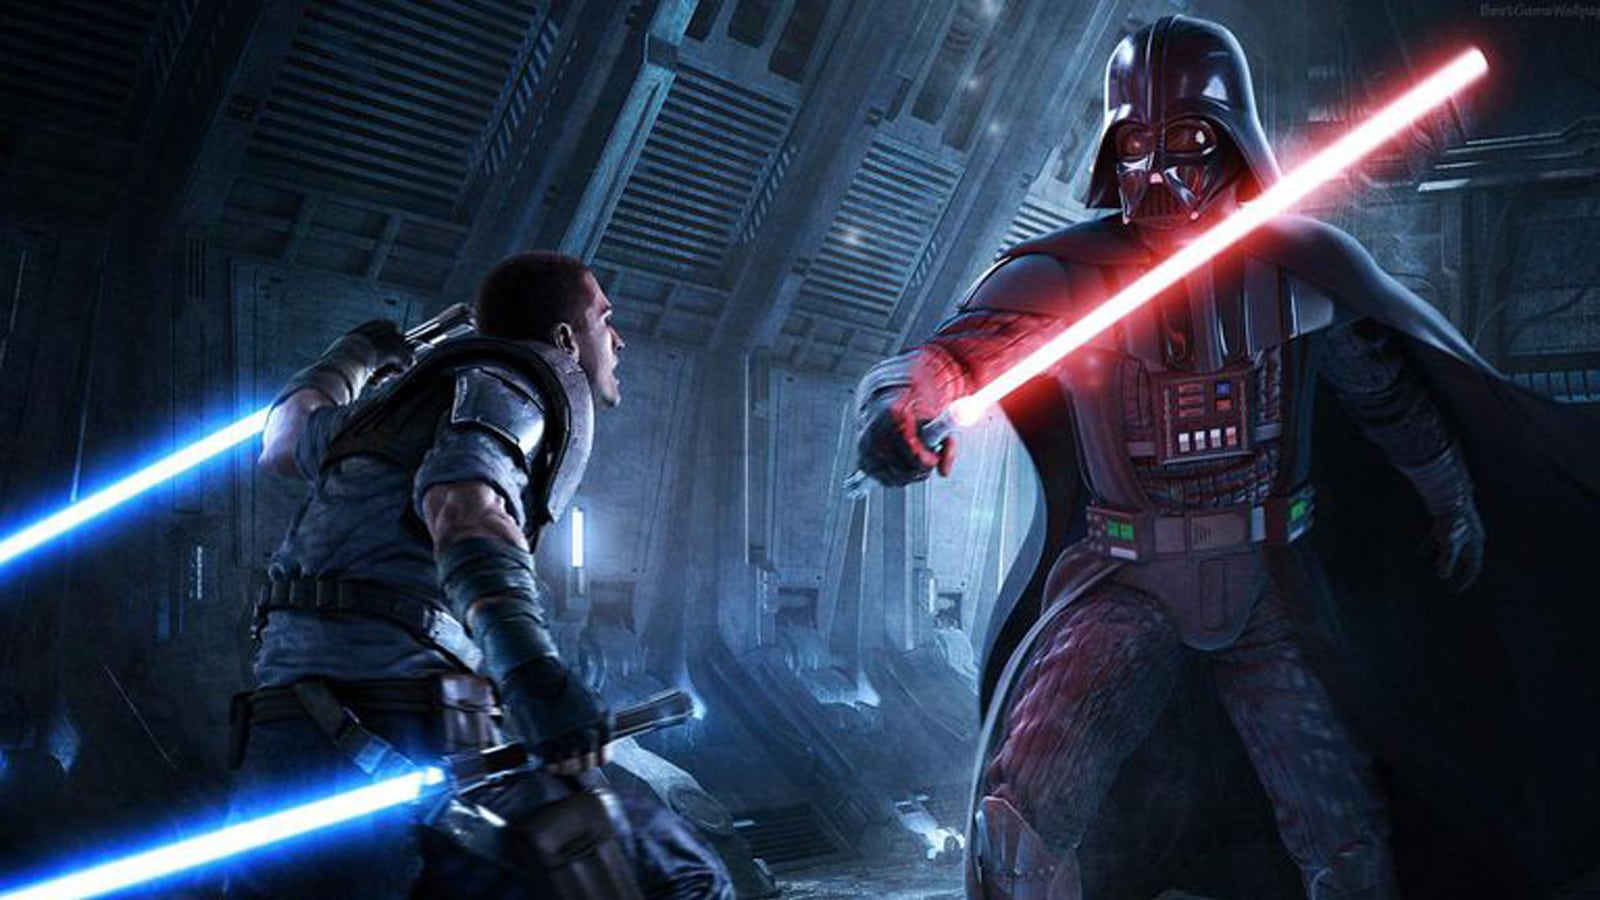 nous avons besoin d'une haine et d'une douleur réalistes Sith Lord Darth Vader Star Wars simulation de jeu vidéo de Lucasfilm Games